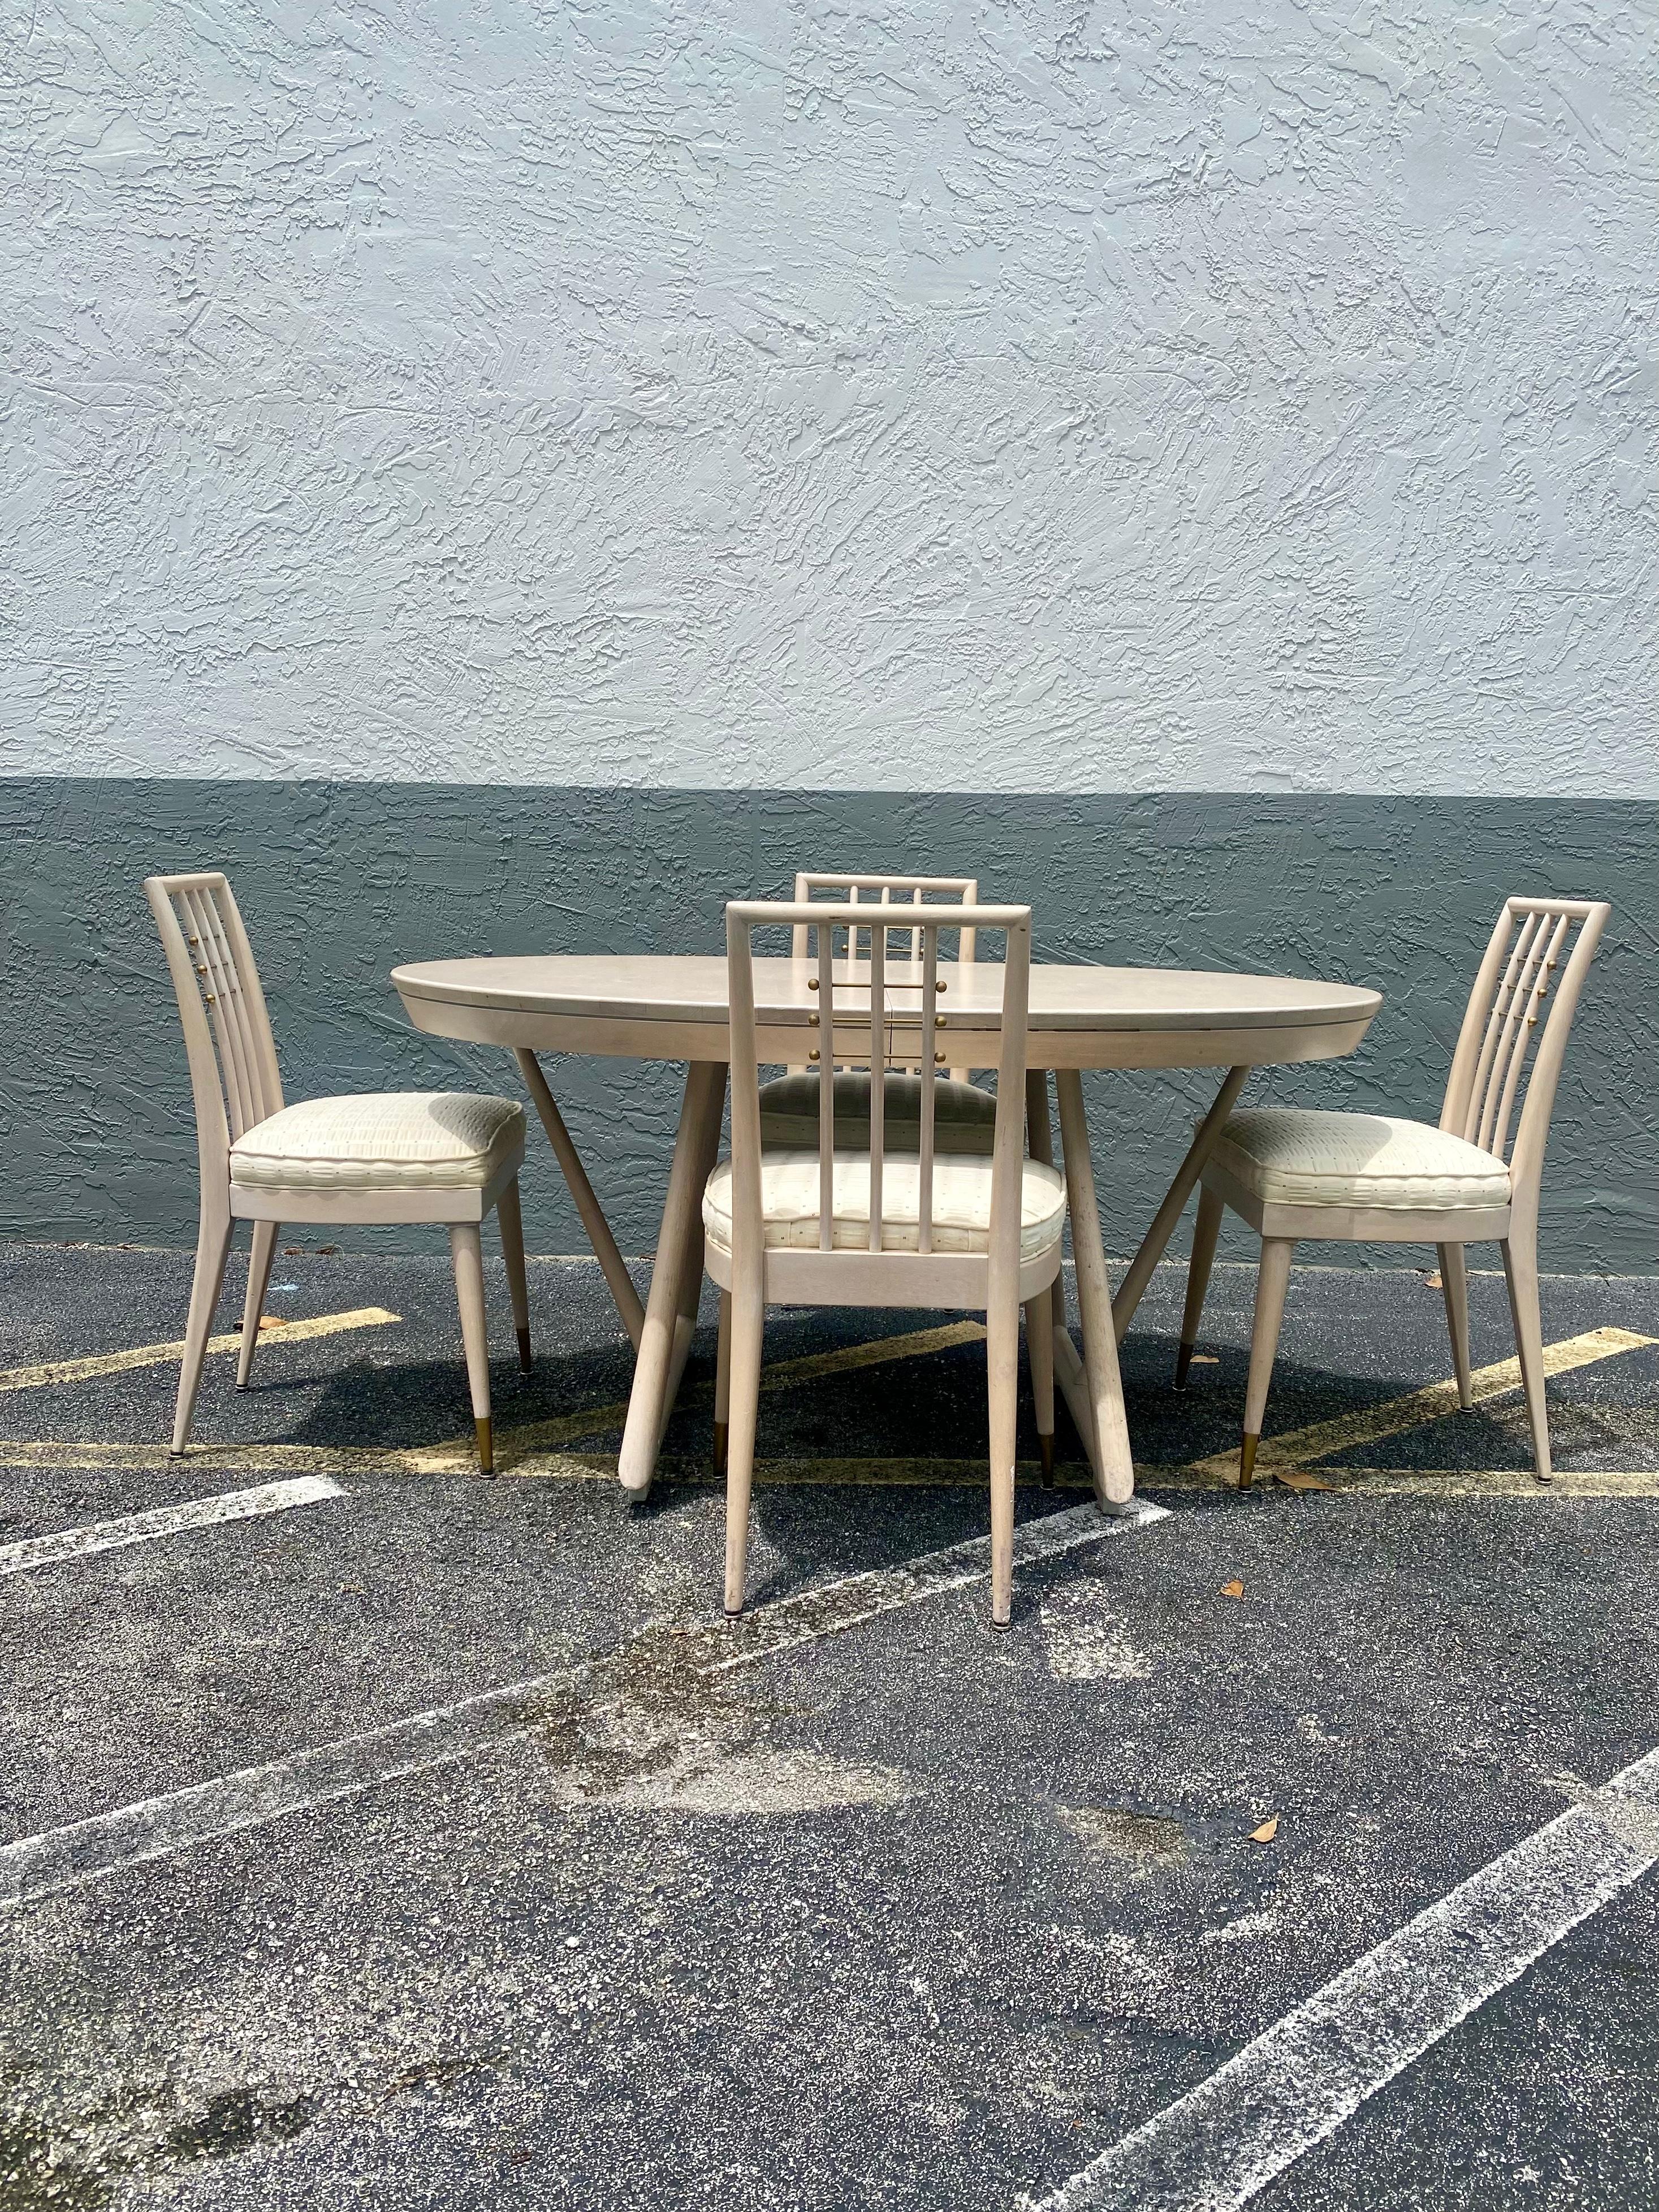 Nous vous proposons ici l'une des plus belles tables de salle à manger à rallonge et chaises en bois que vous puissiez espérer trouver. Il s'agit d'une occasion très rare d'acquérir ce qui est, sans équivoque, le meilleur des meilleurs, car il